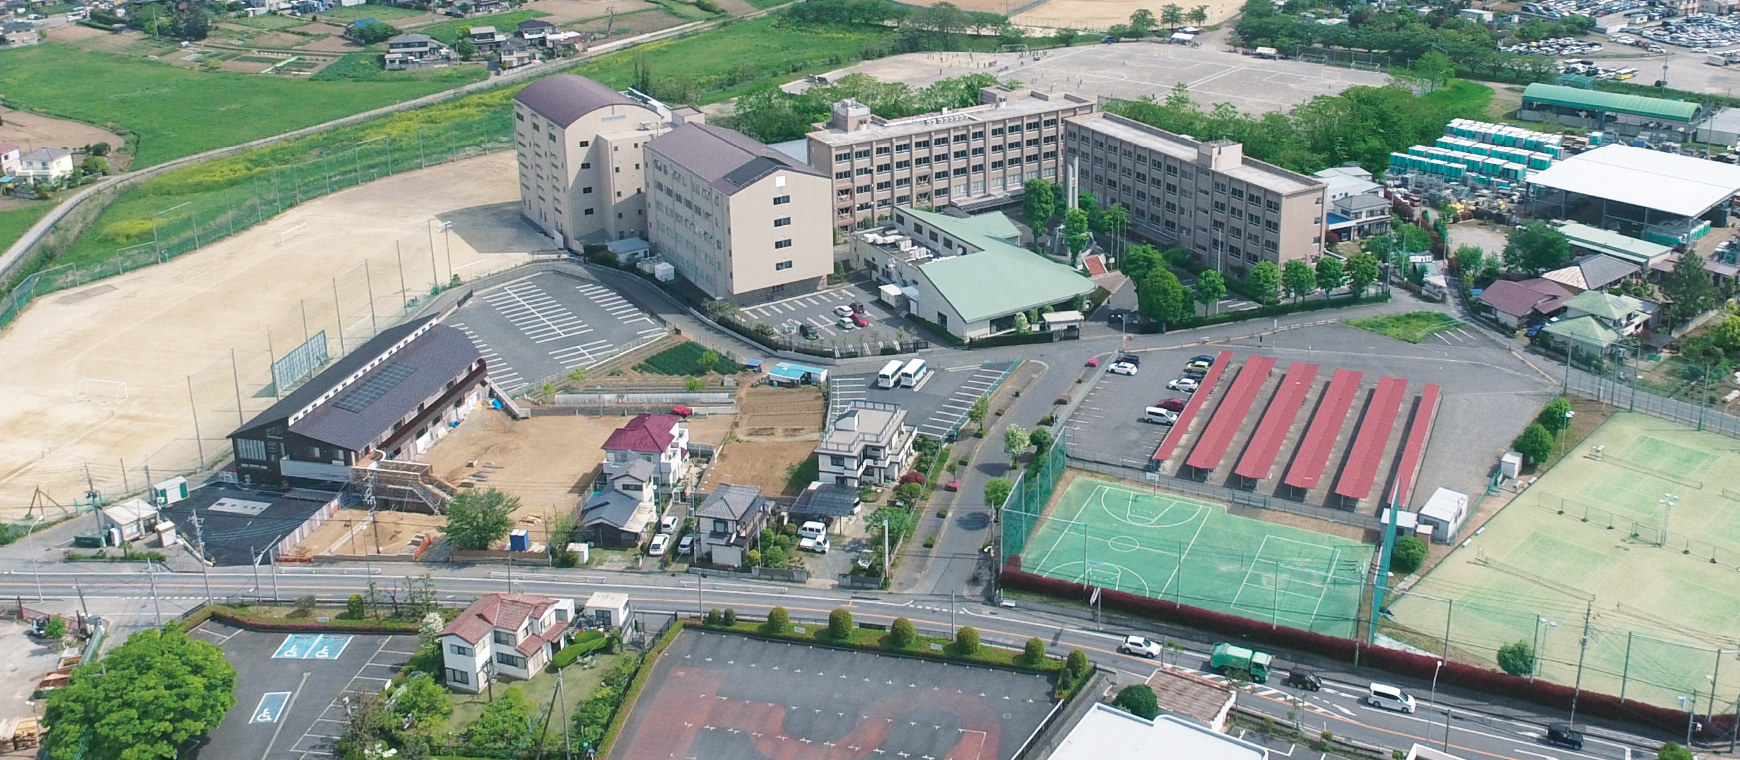 秀明英光高等学校敷地内の空撮写真です。